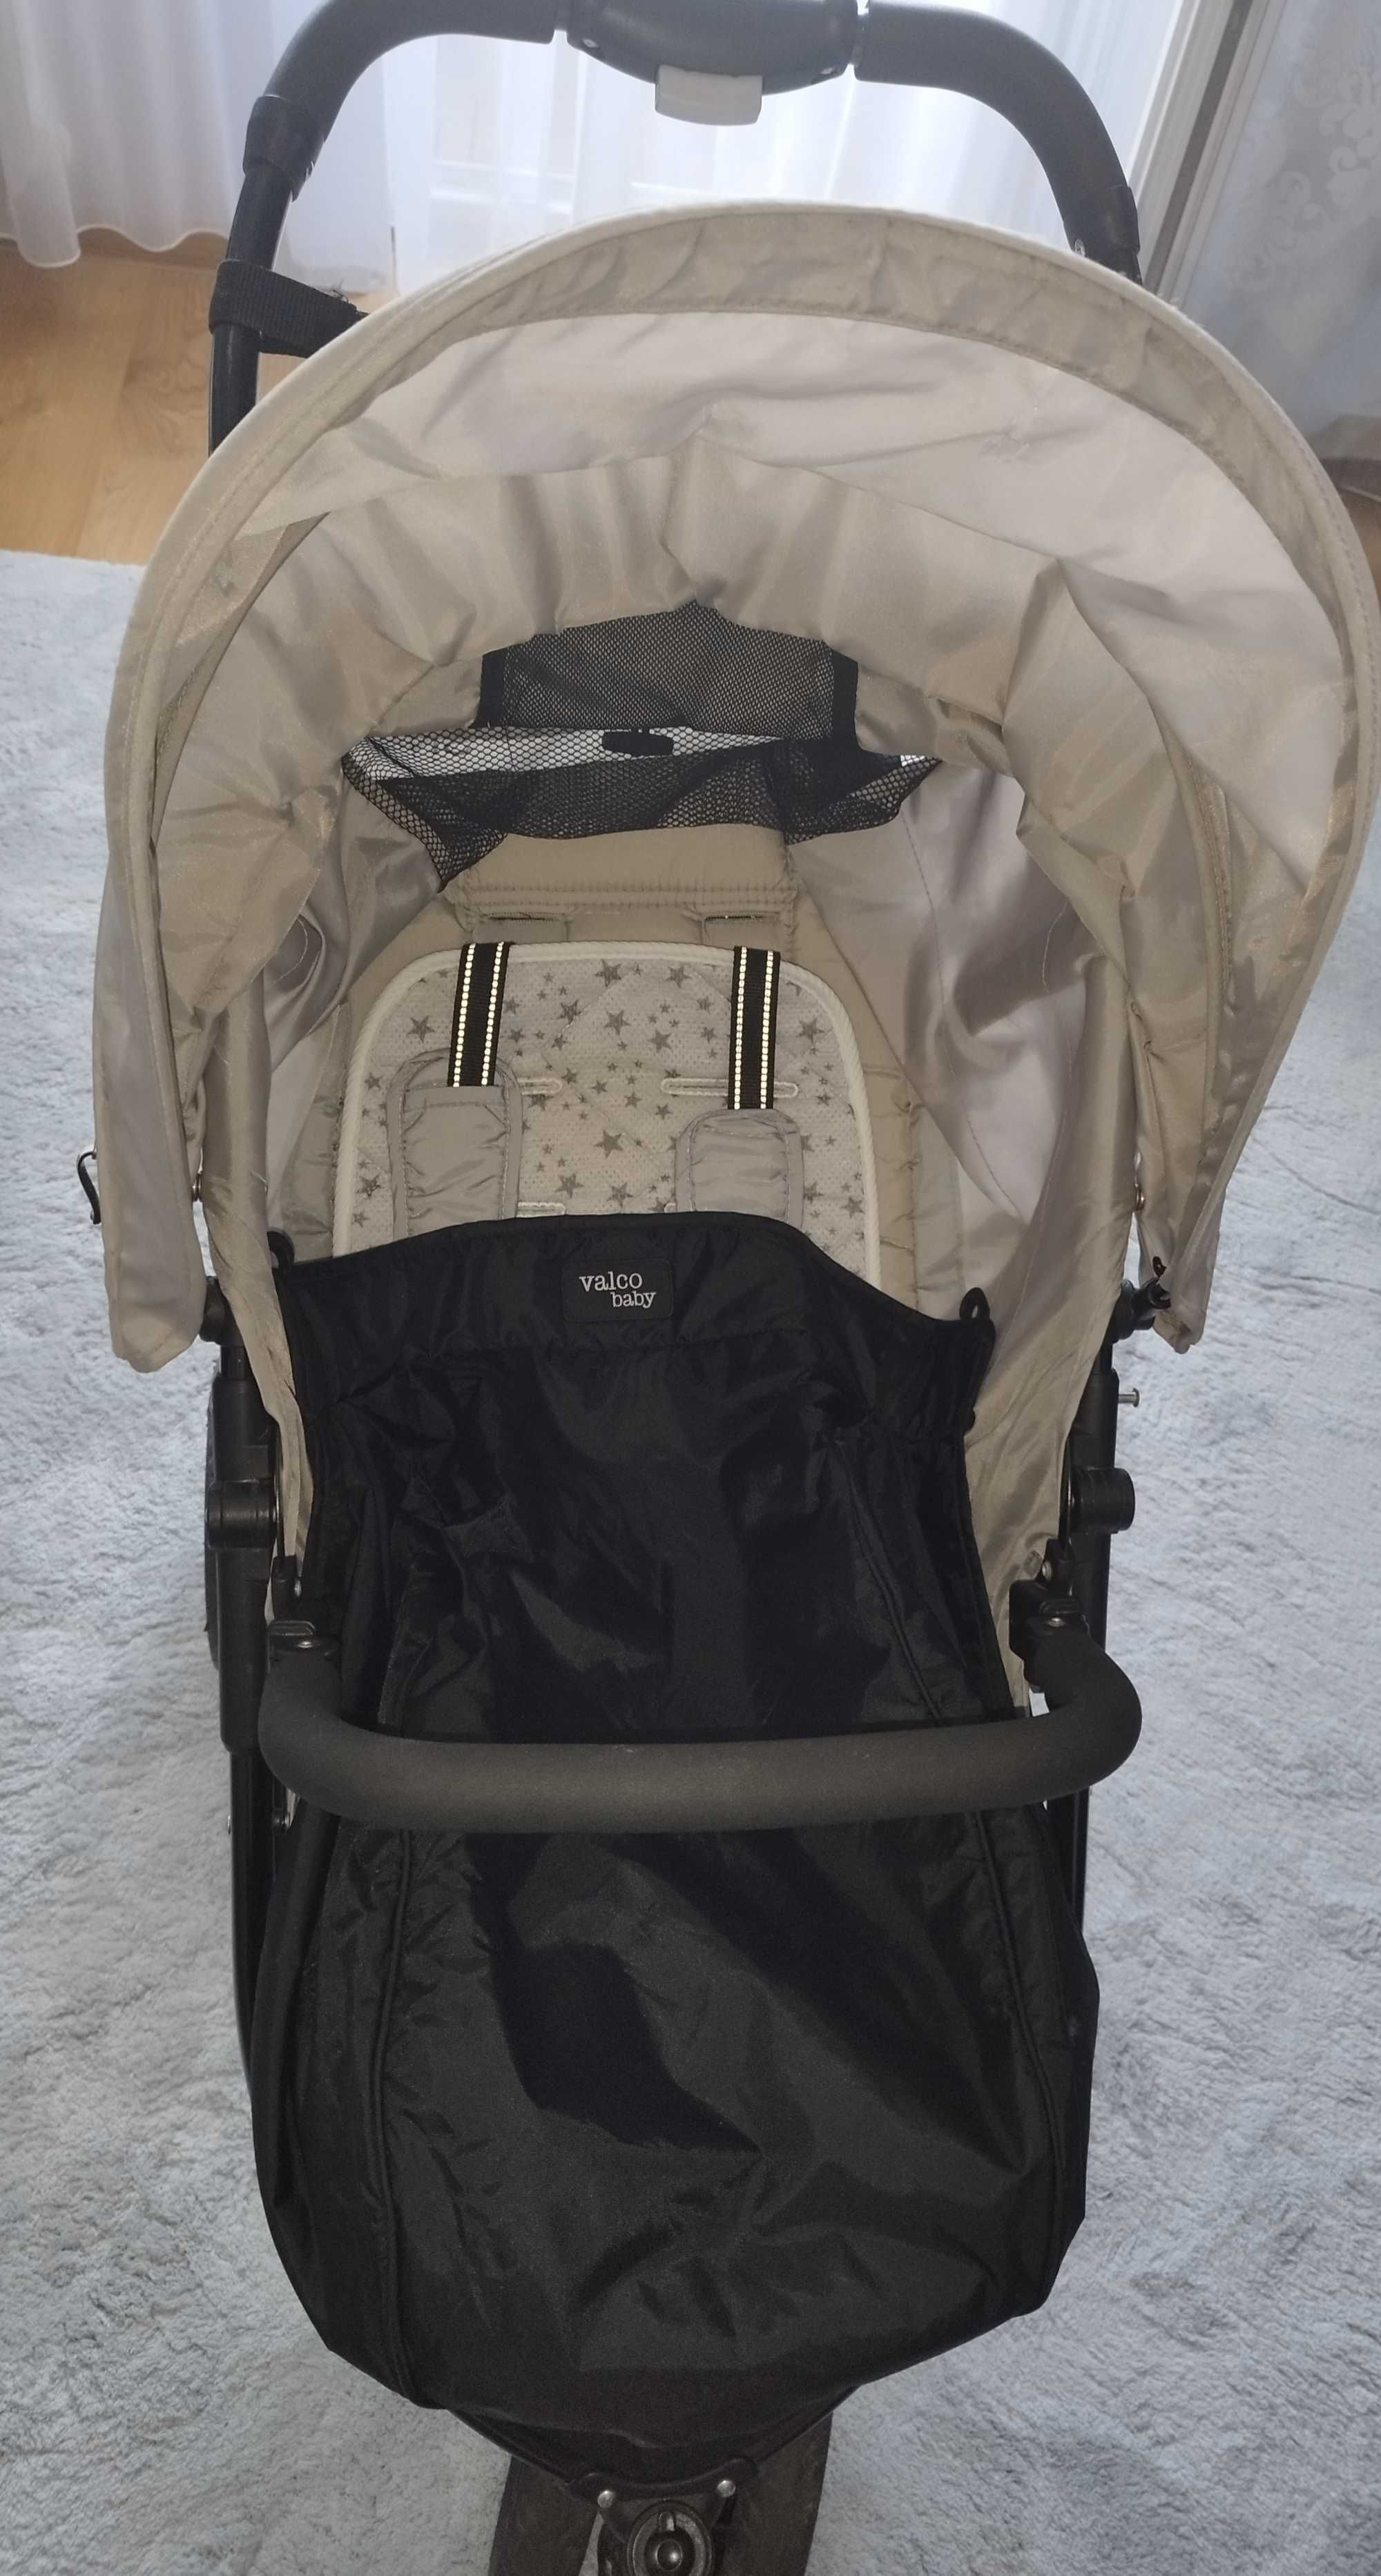 Wózek spacerowy Valco Baby Snap + folia, pokrowiec, torba i śpiworek